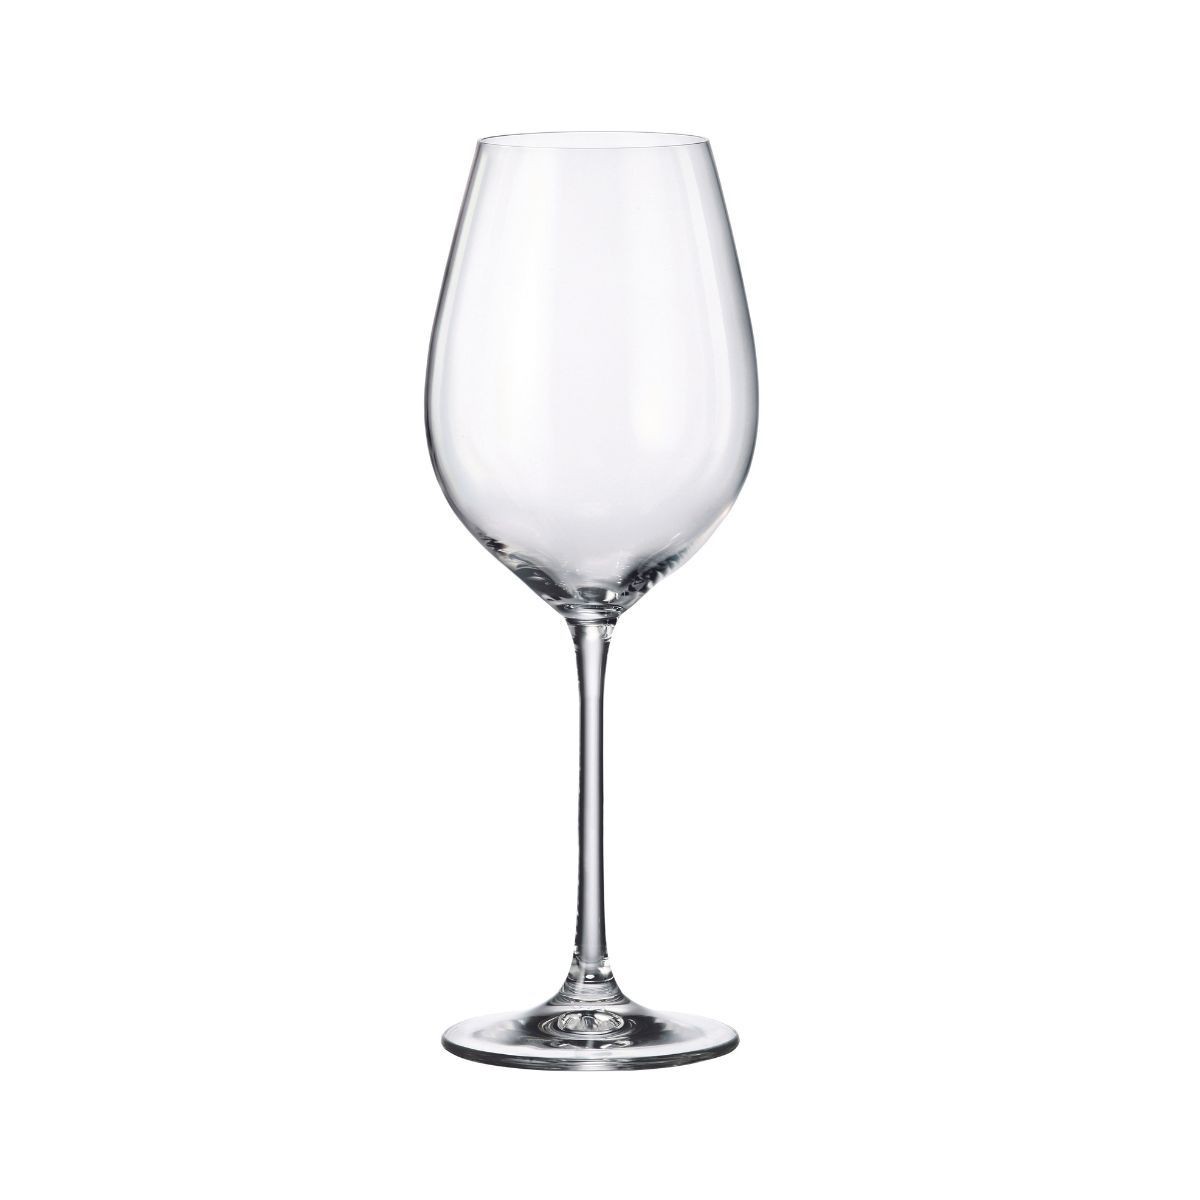 Set de 6 pahare pentru vin rosu, transparent, din cristal de Bohemia, 520 ml, Verona Red Wine